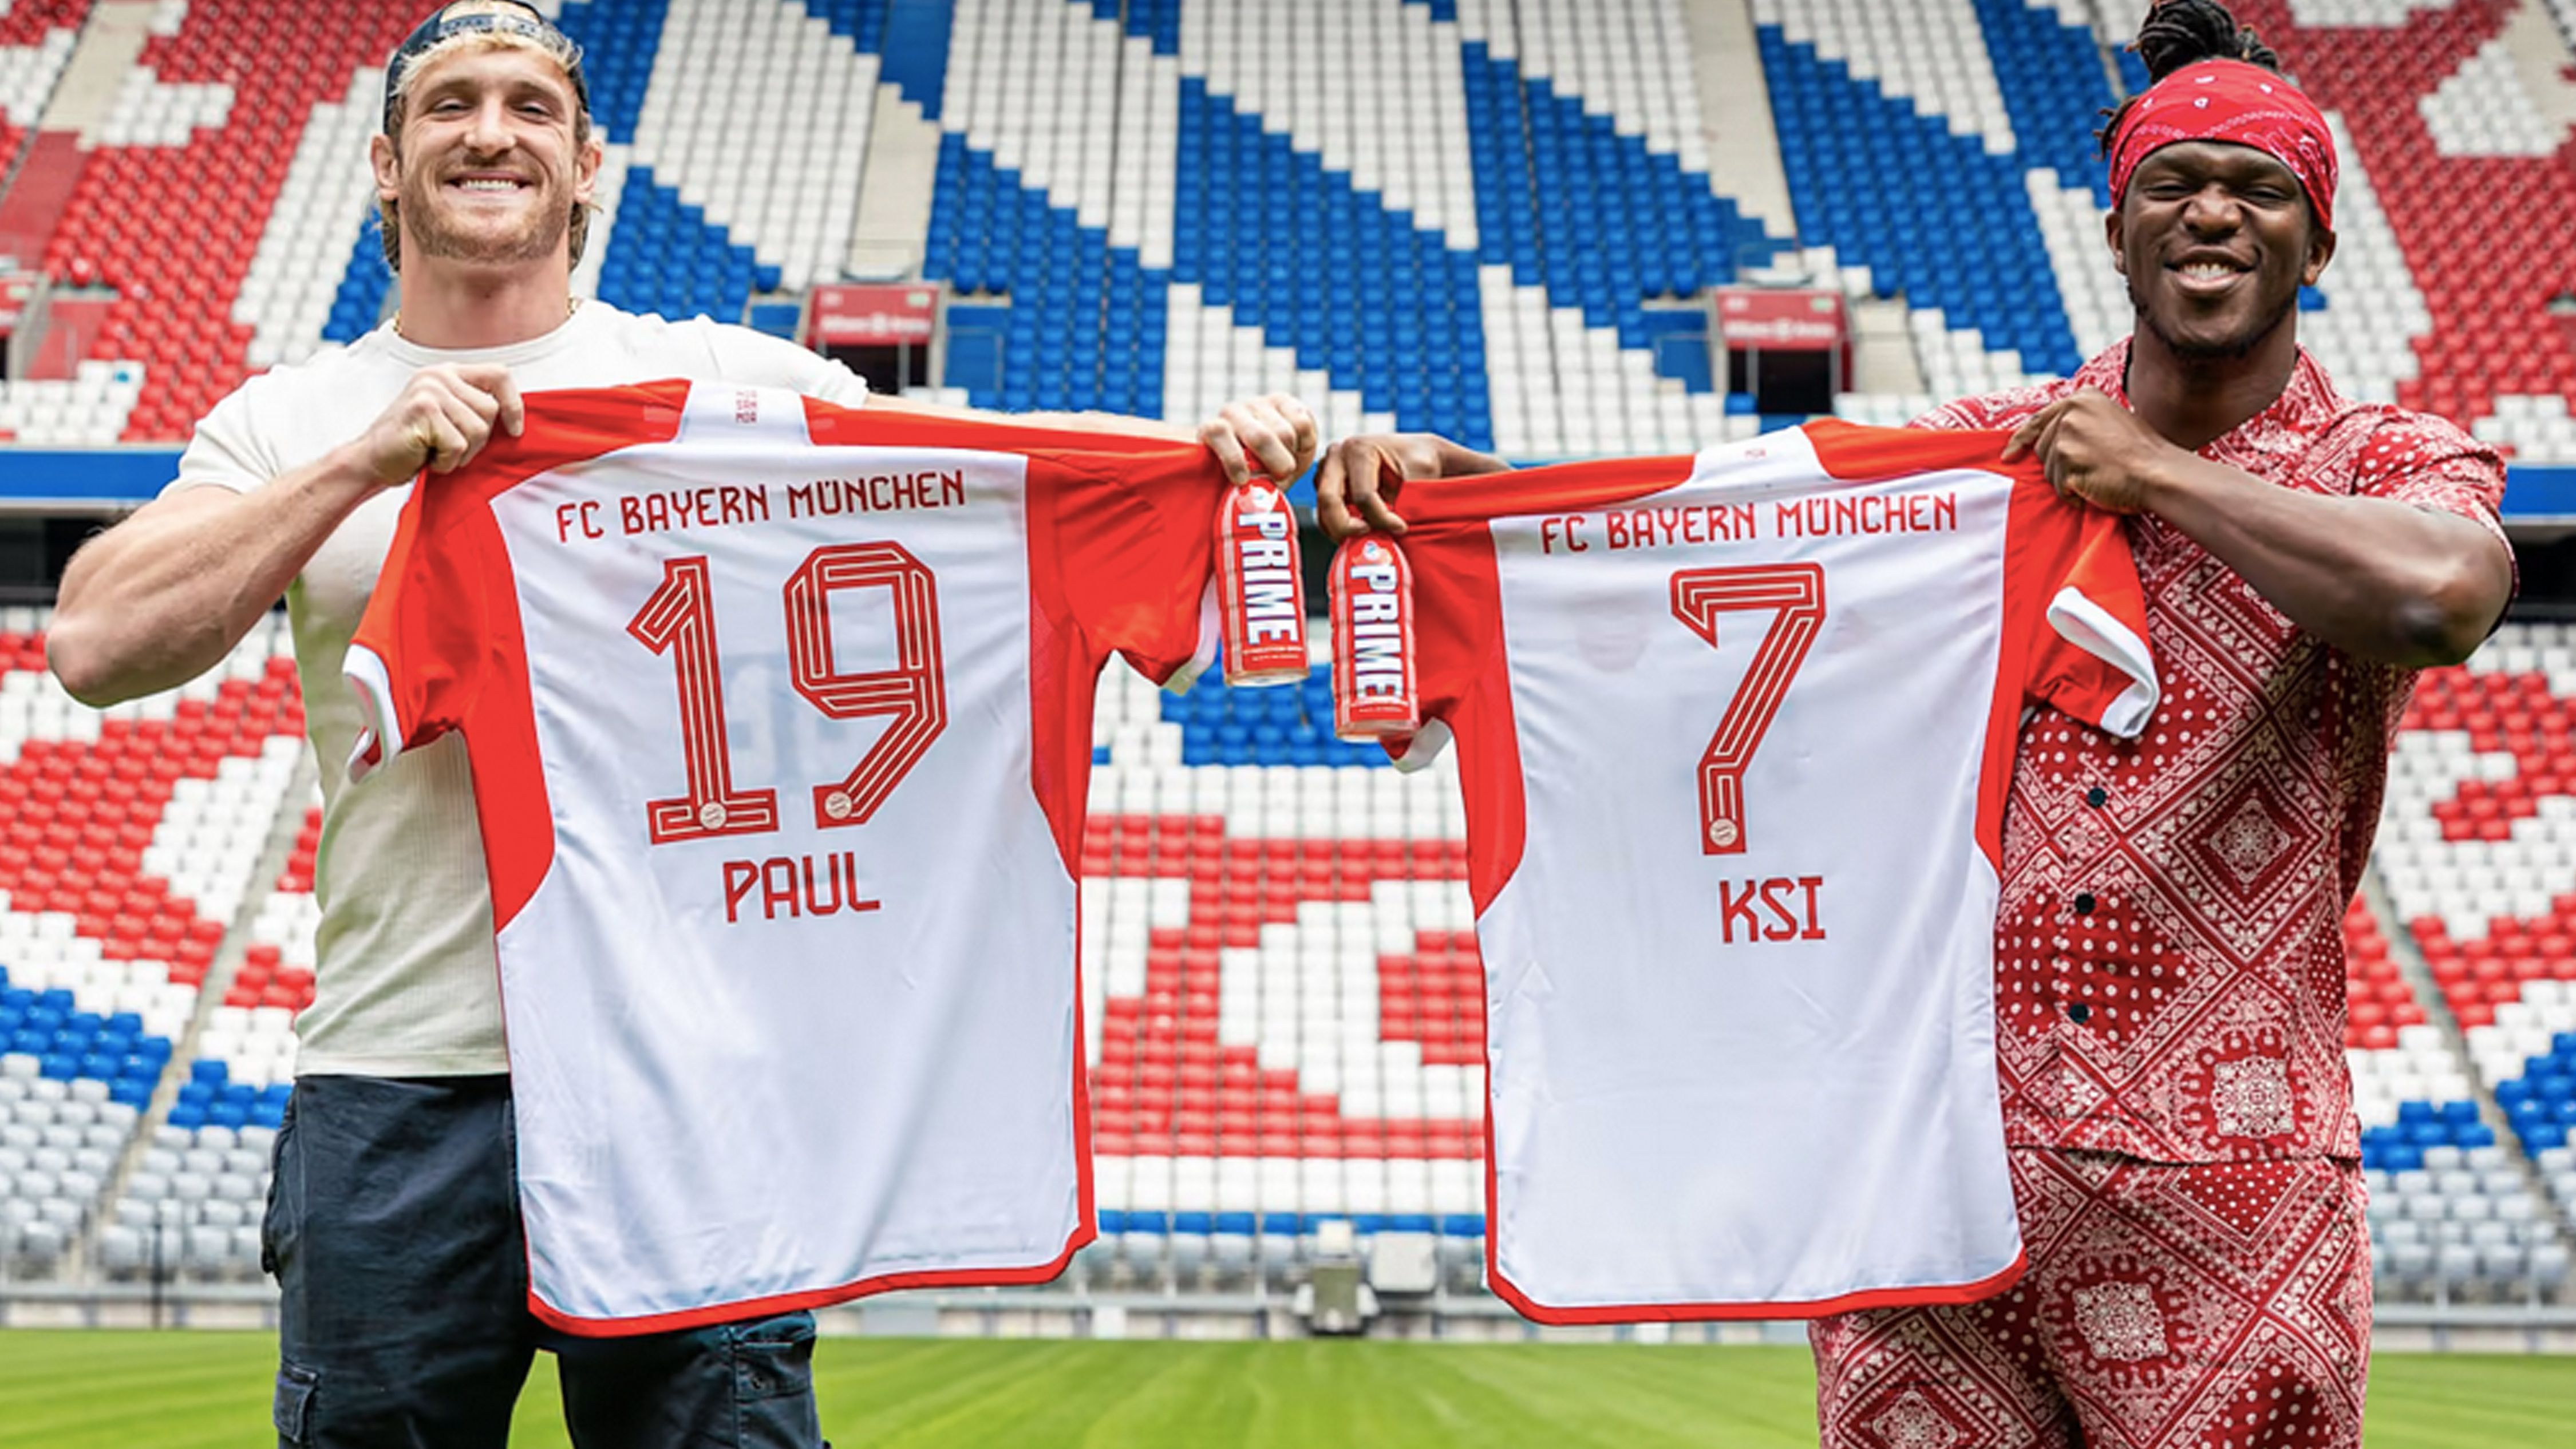 FC Bayern München Kooperation mit Logan Paul und KSI